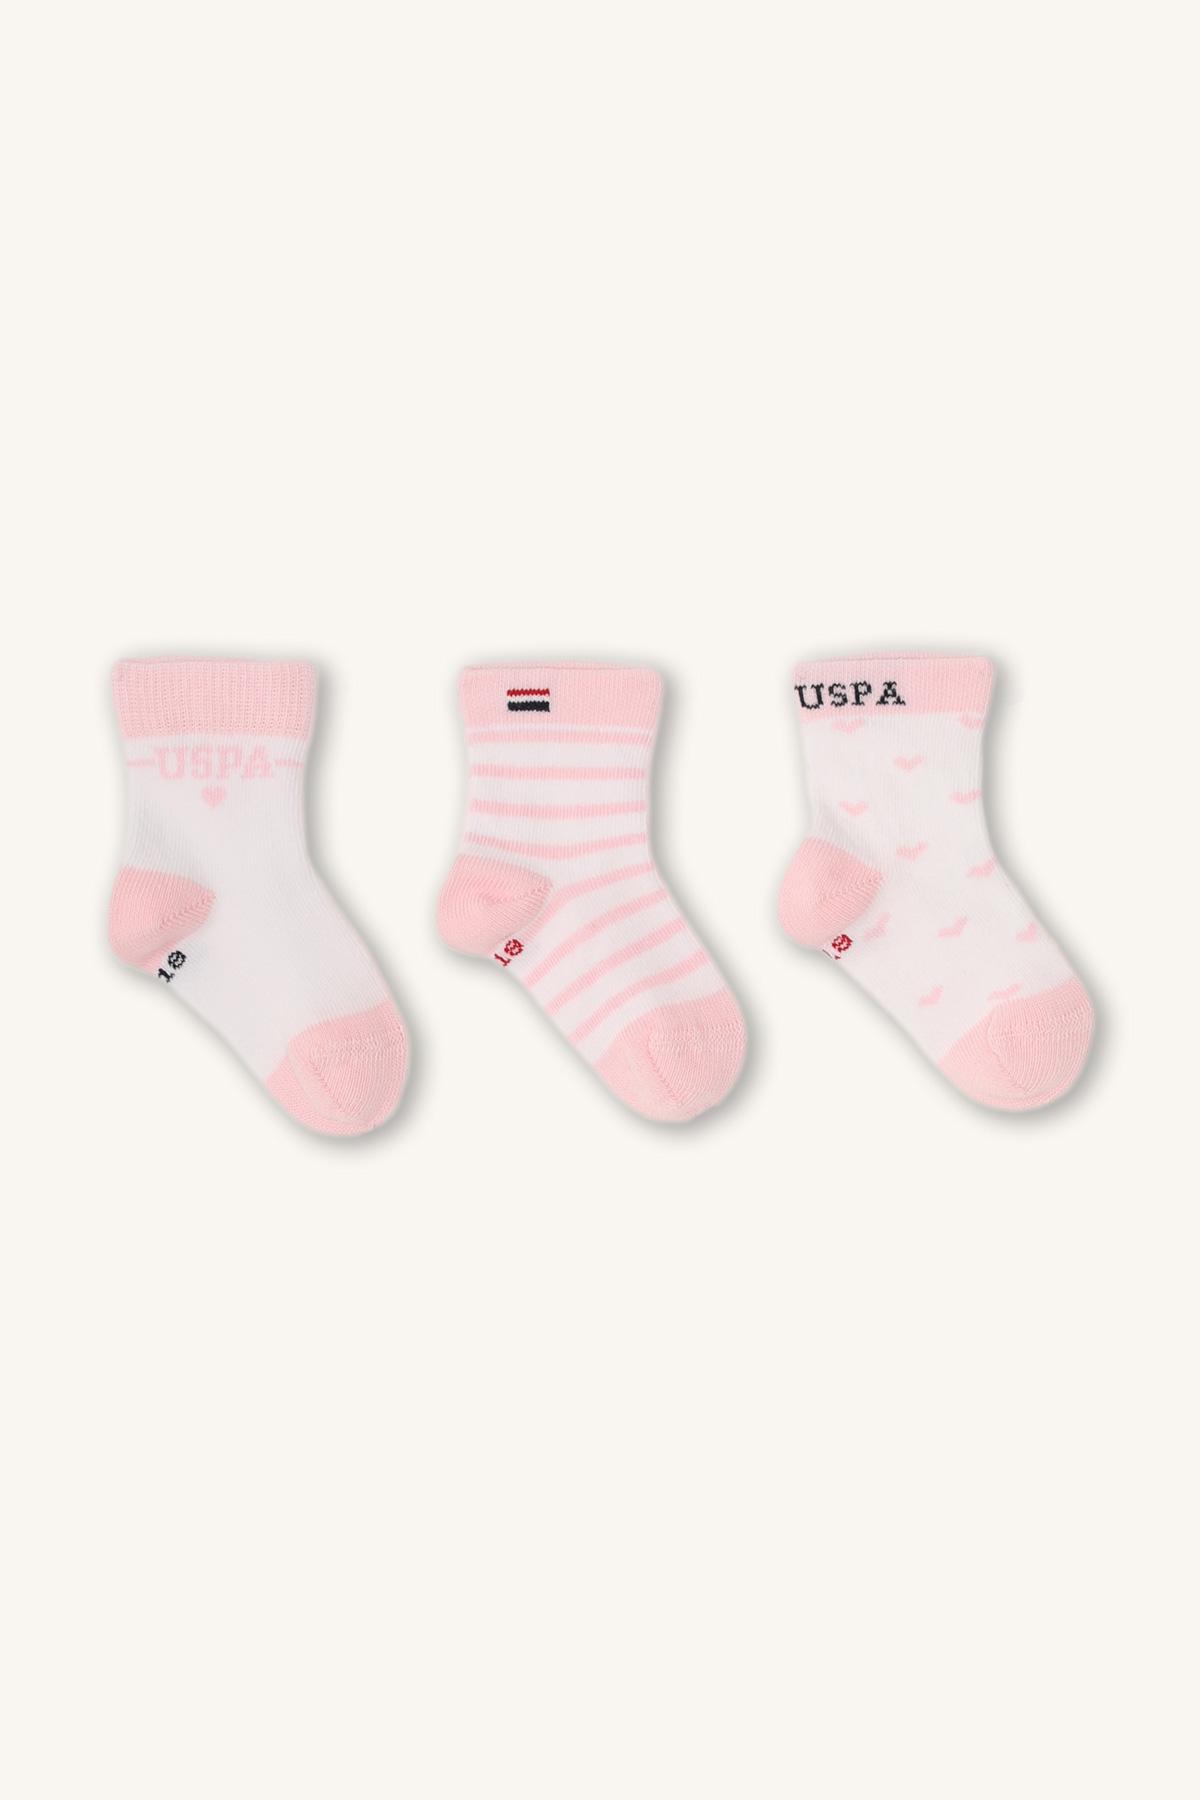 U.S. POLO ASSN. Čarape za devojčice USB947, 3 para, Roze